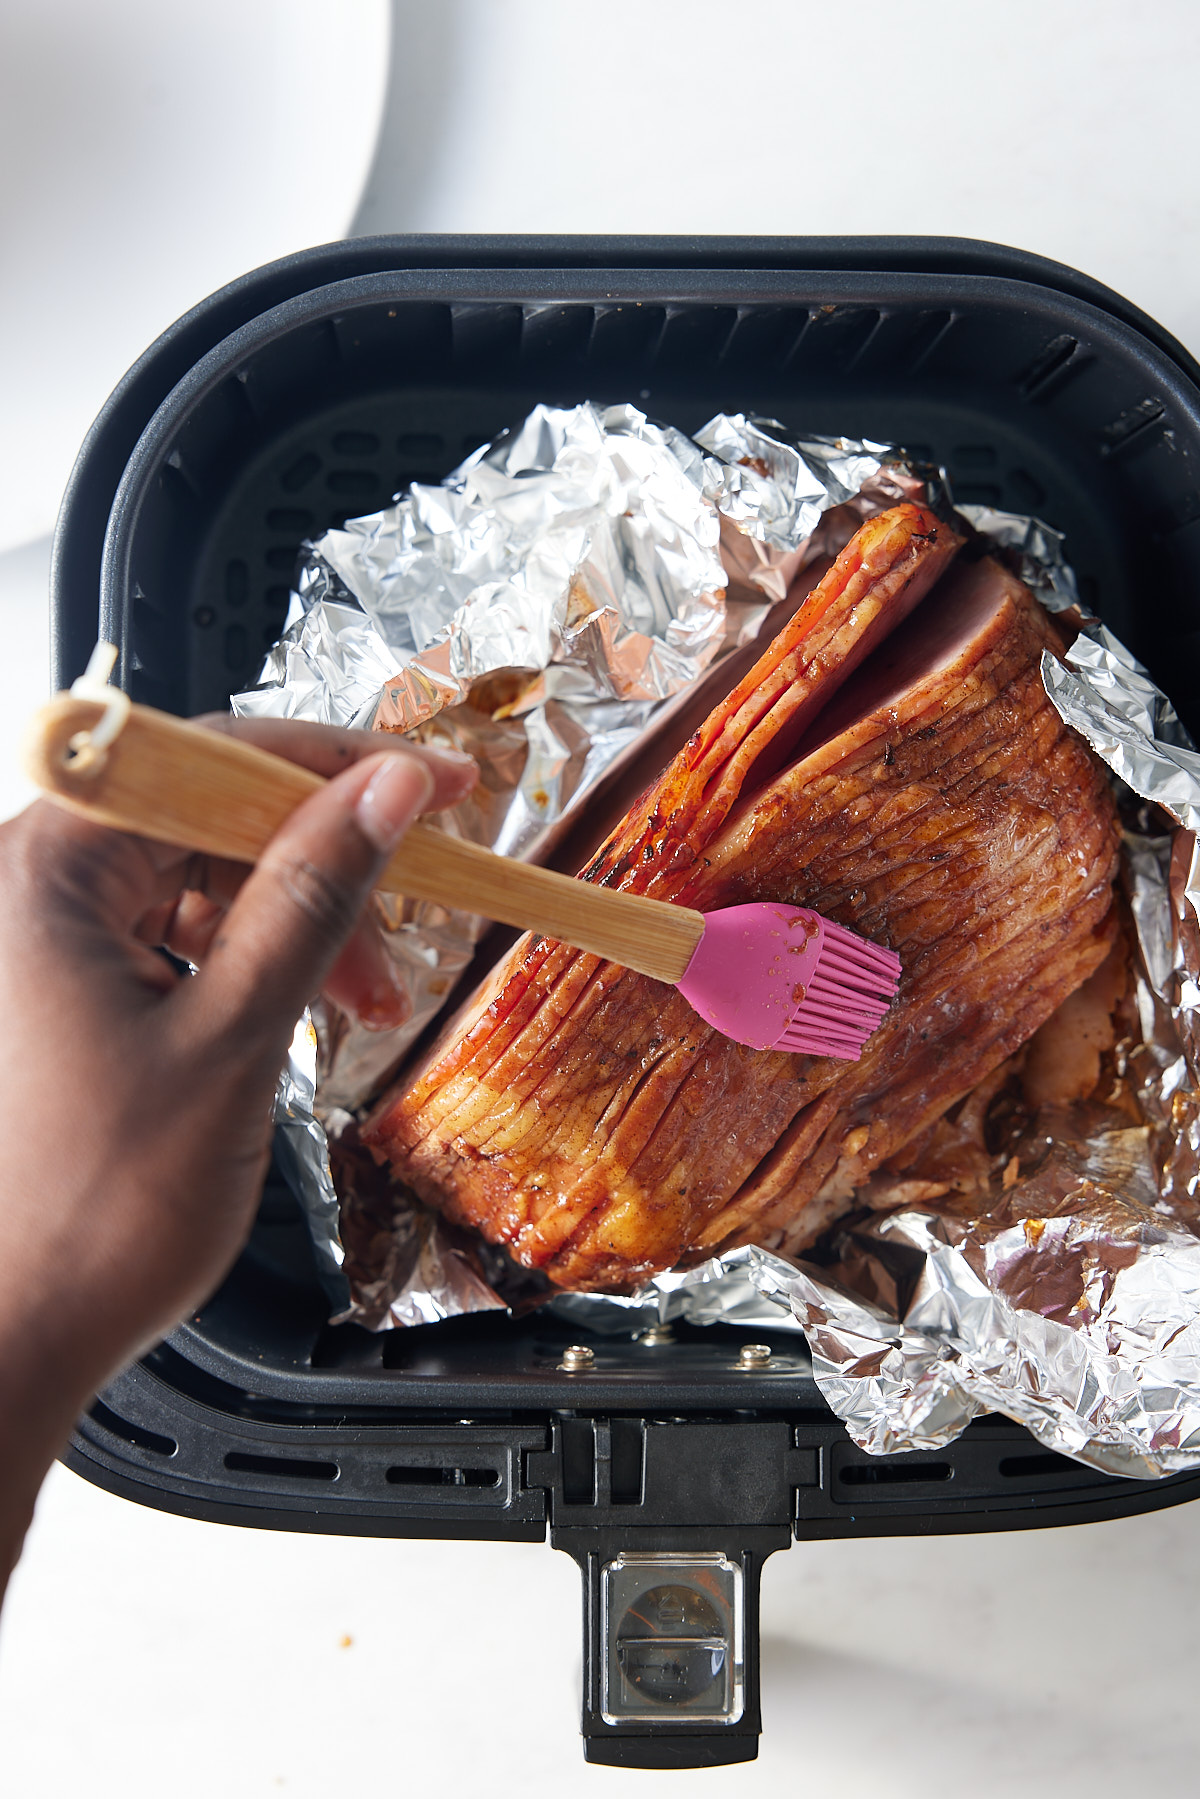 glaze being brished on ham in air fryer basket